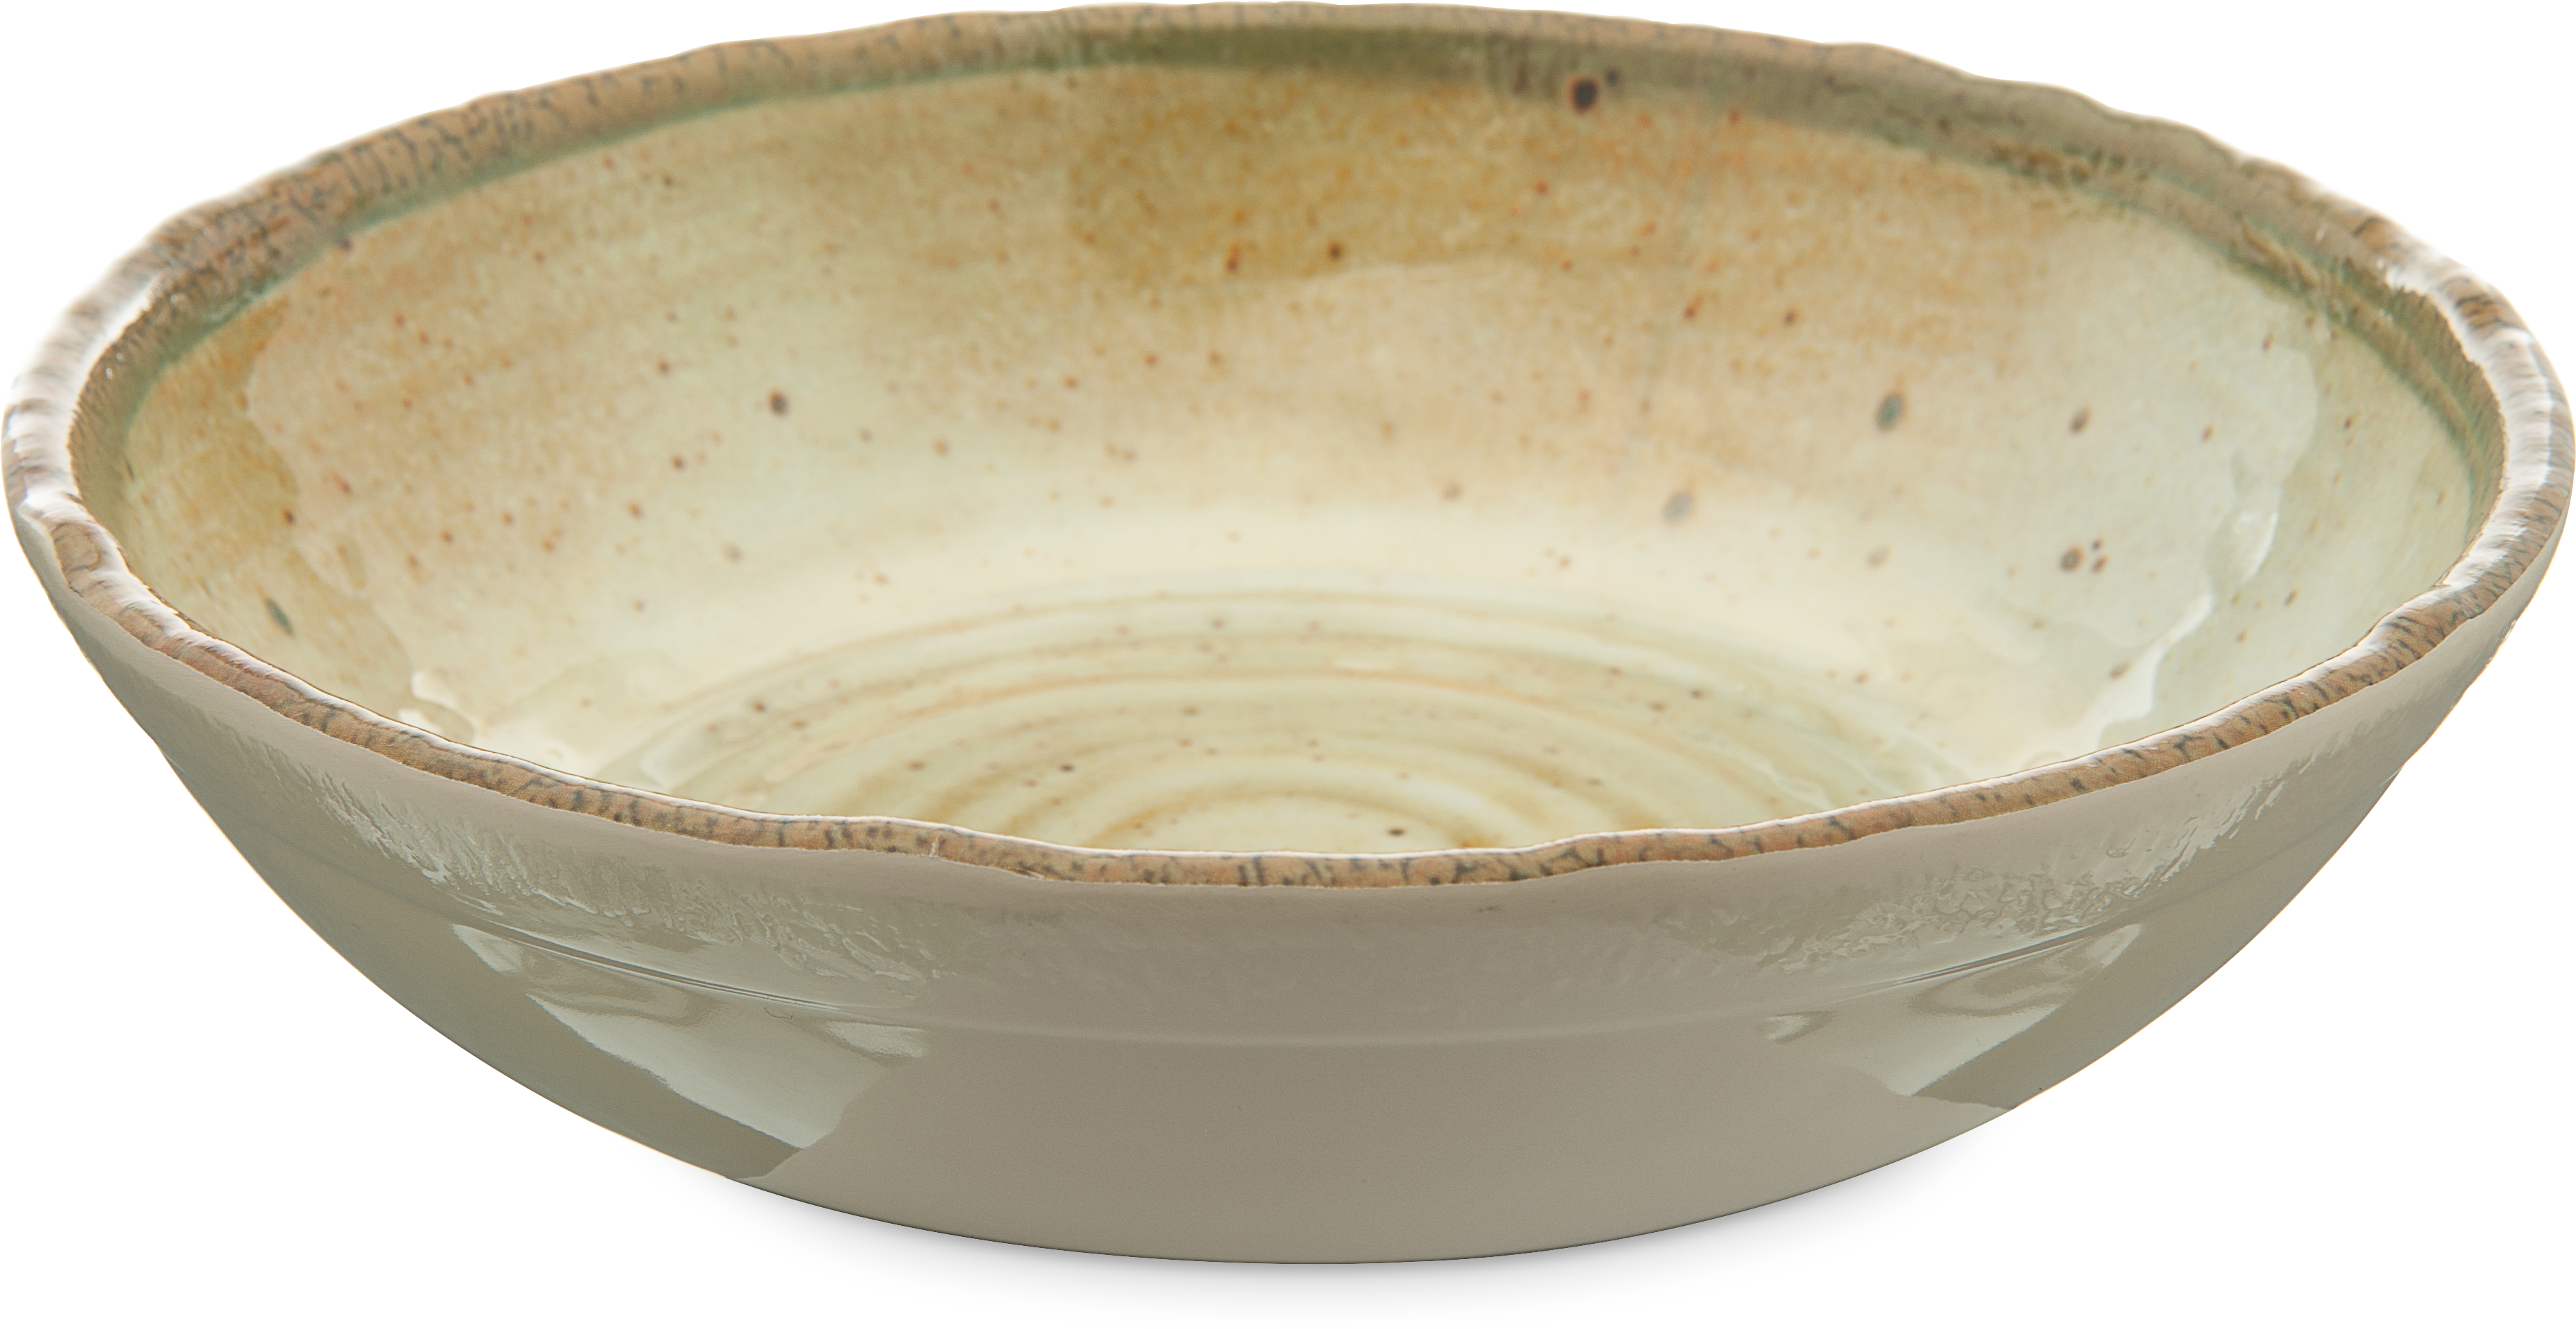 Gathering Melamine Small Bowl 35.5 oz - Adobe